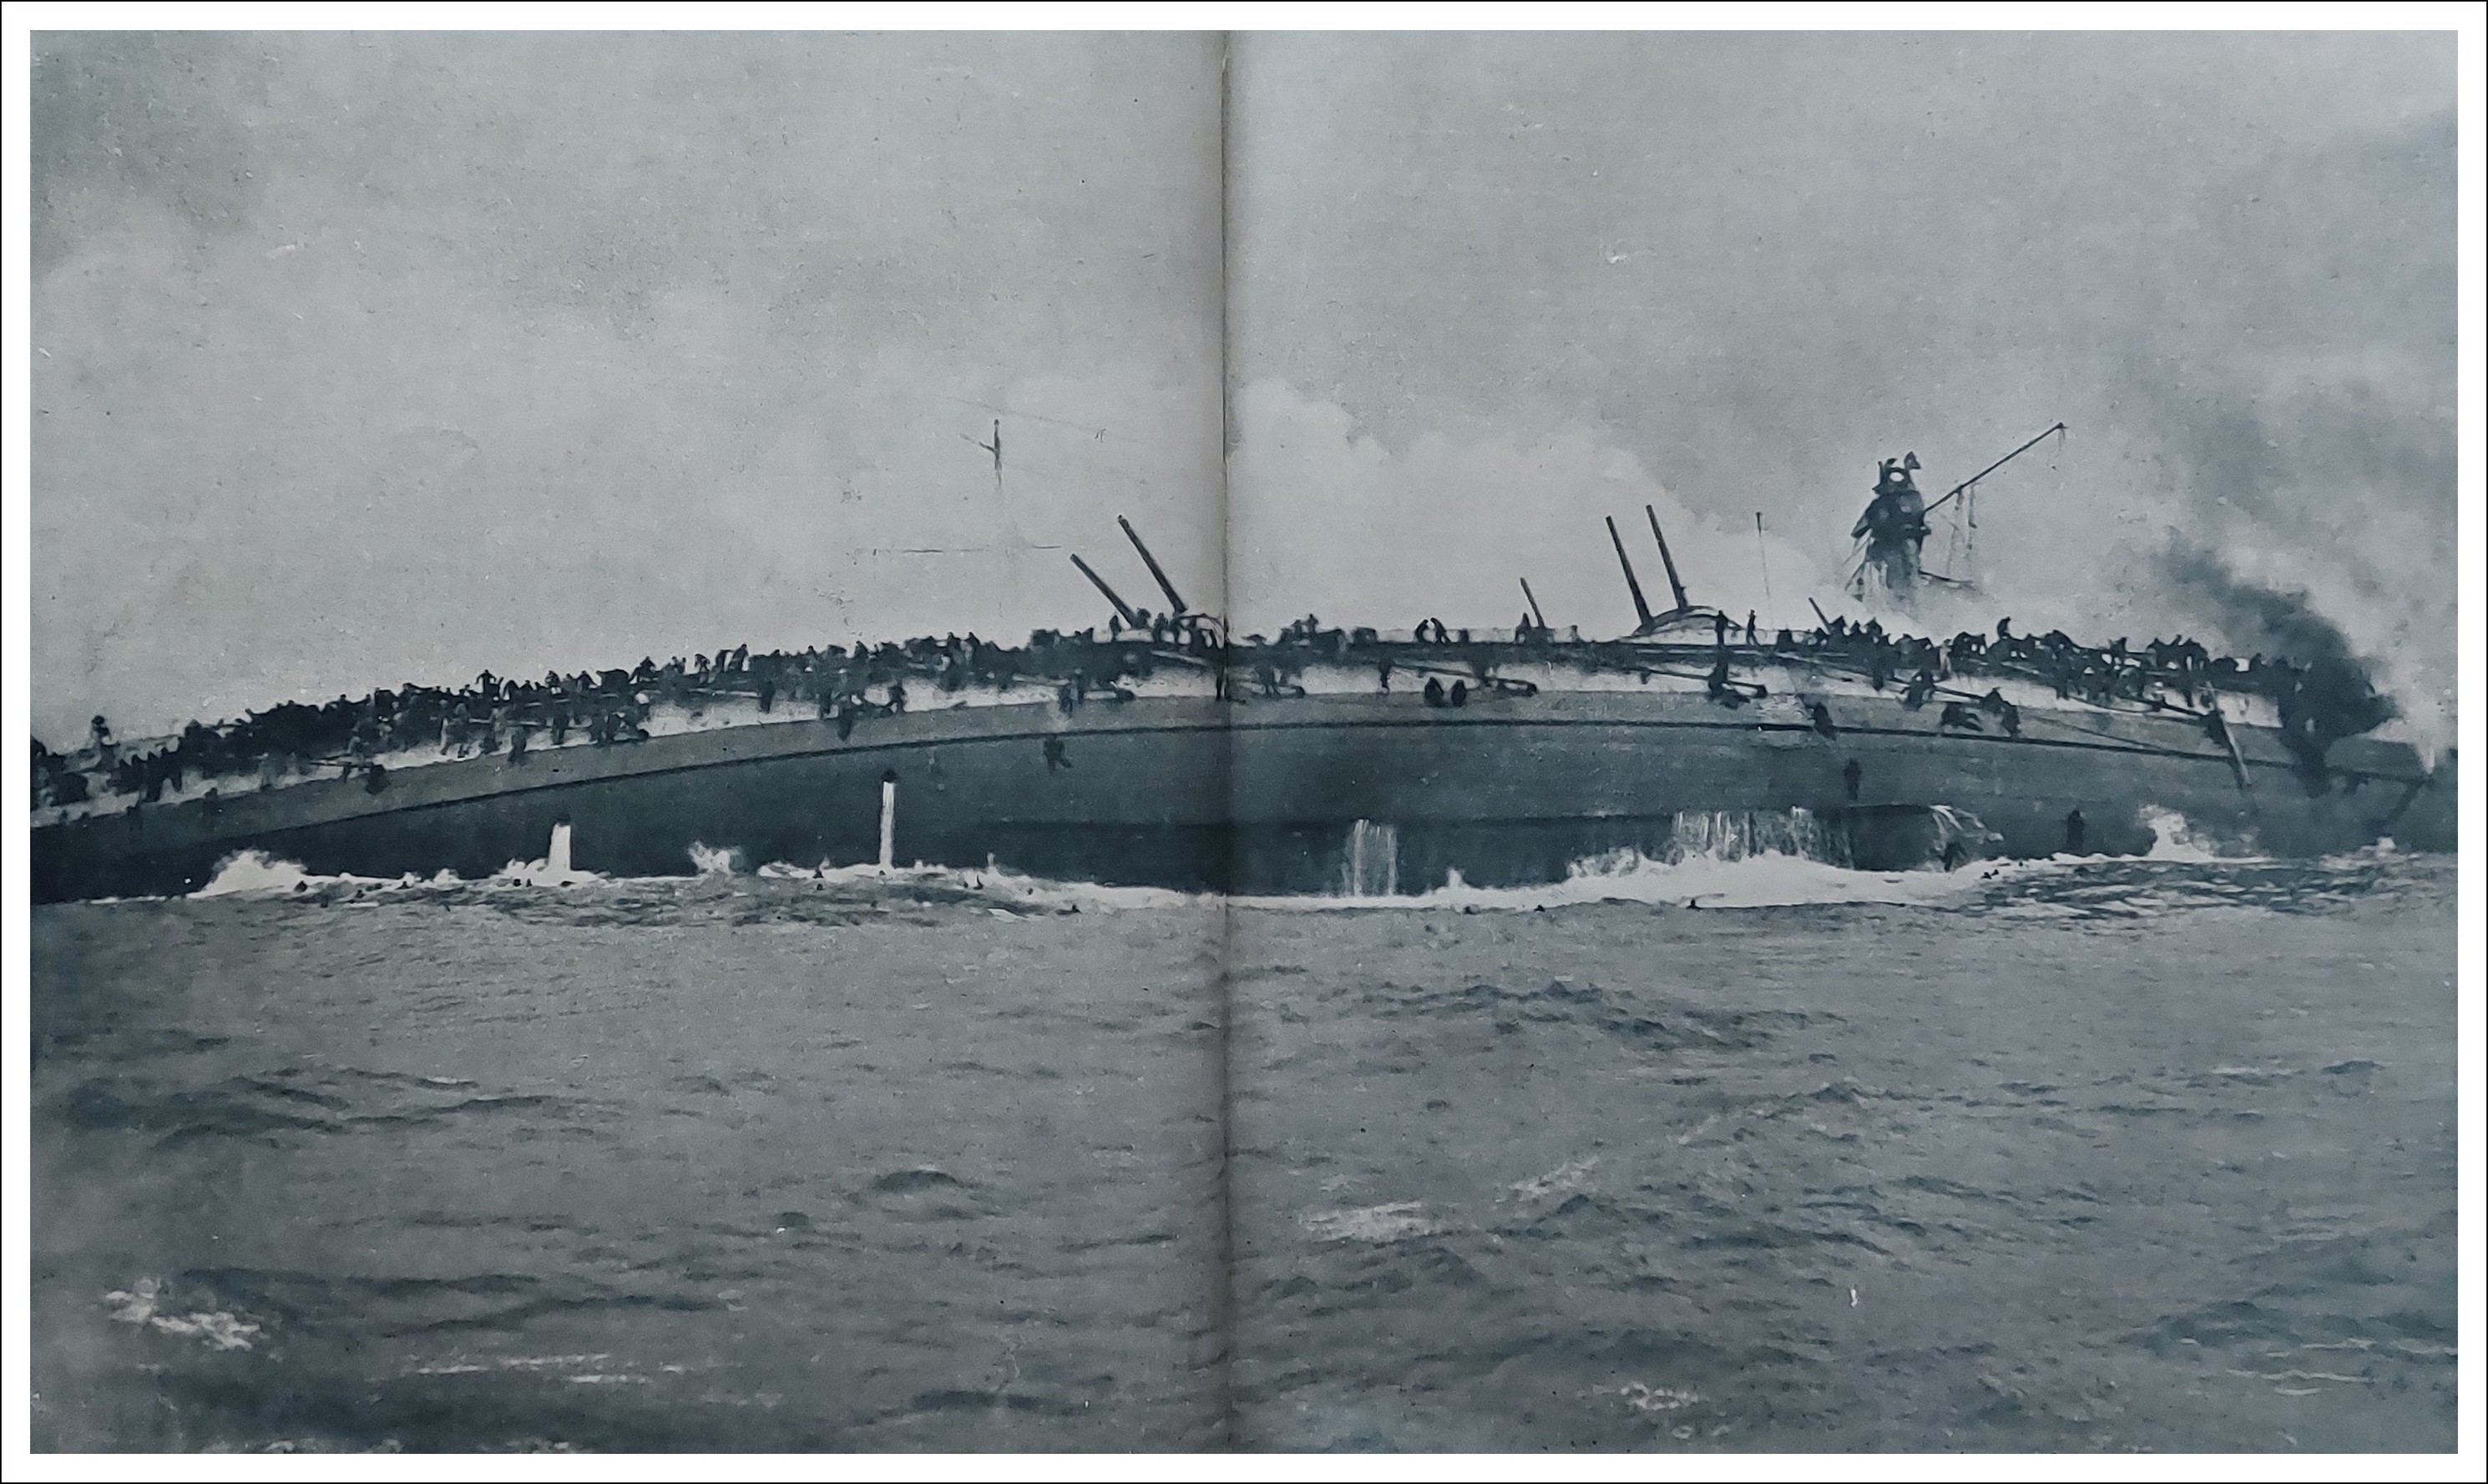 La plus extraordinaire photographie de guerre navale qui ait jamais été publiée - le cliché fut pris à l'instant précis où le croiseur cuirassé allemand &quot;BLÜCHER&quot; tournait sur lui-même et allait sombrer, tandis que l'équipage se jetait ou glissait à la mer.